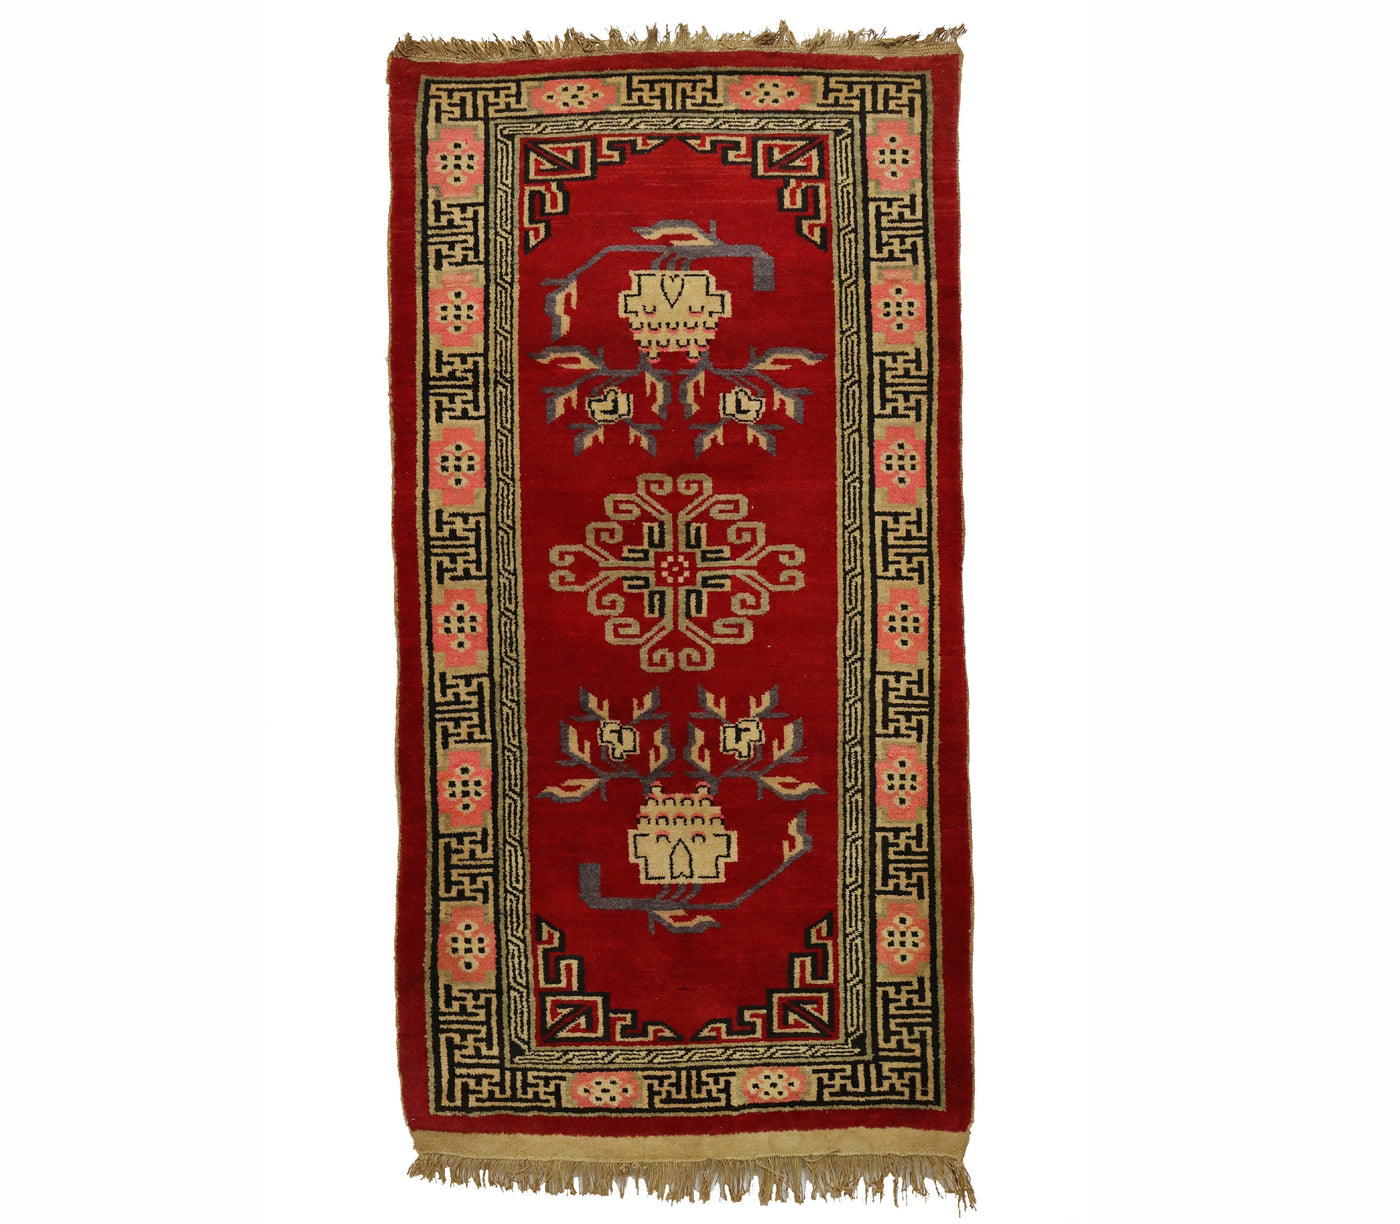 170x89 cm antik Tibetischer Khaden Yoga Meditation Dorfteppich buddhistische Klöster Drachen Teppich Schlafteppich Nr.22/1  Orientsbazar   